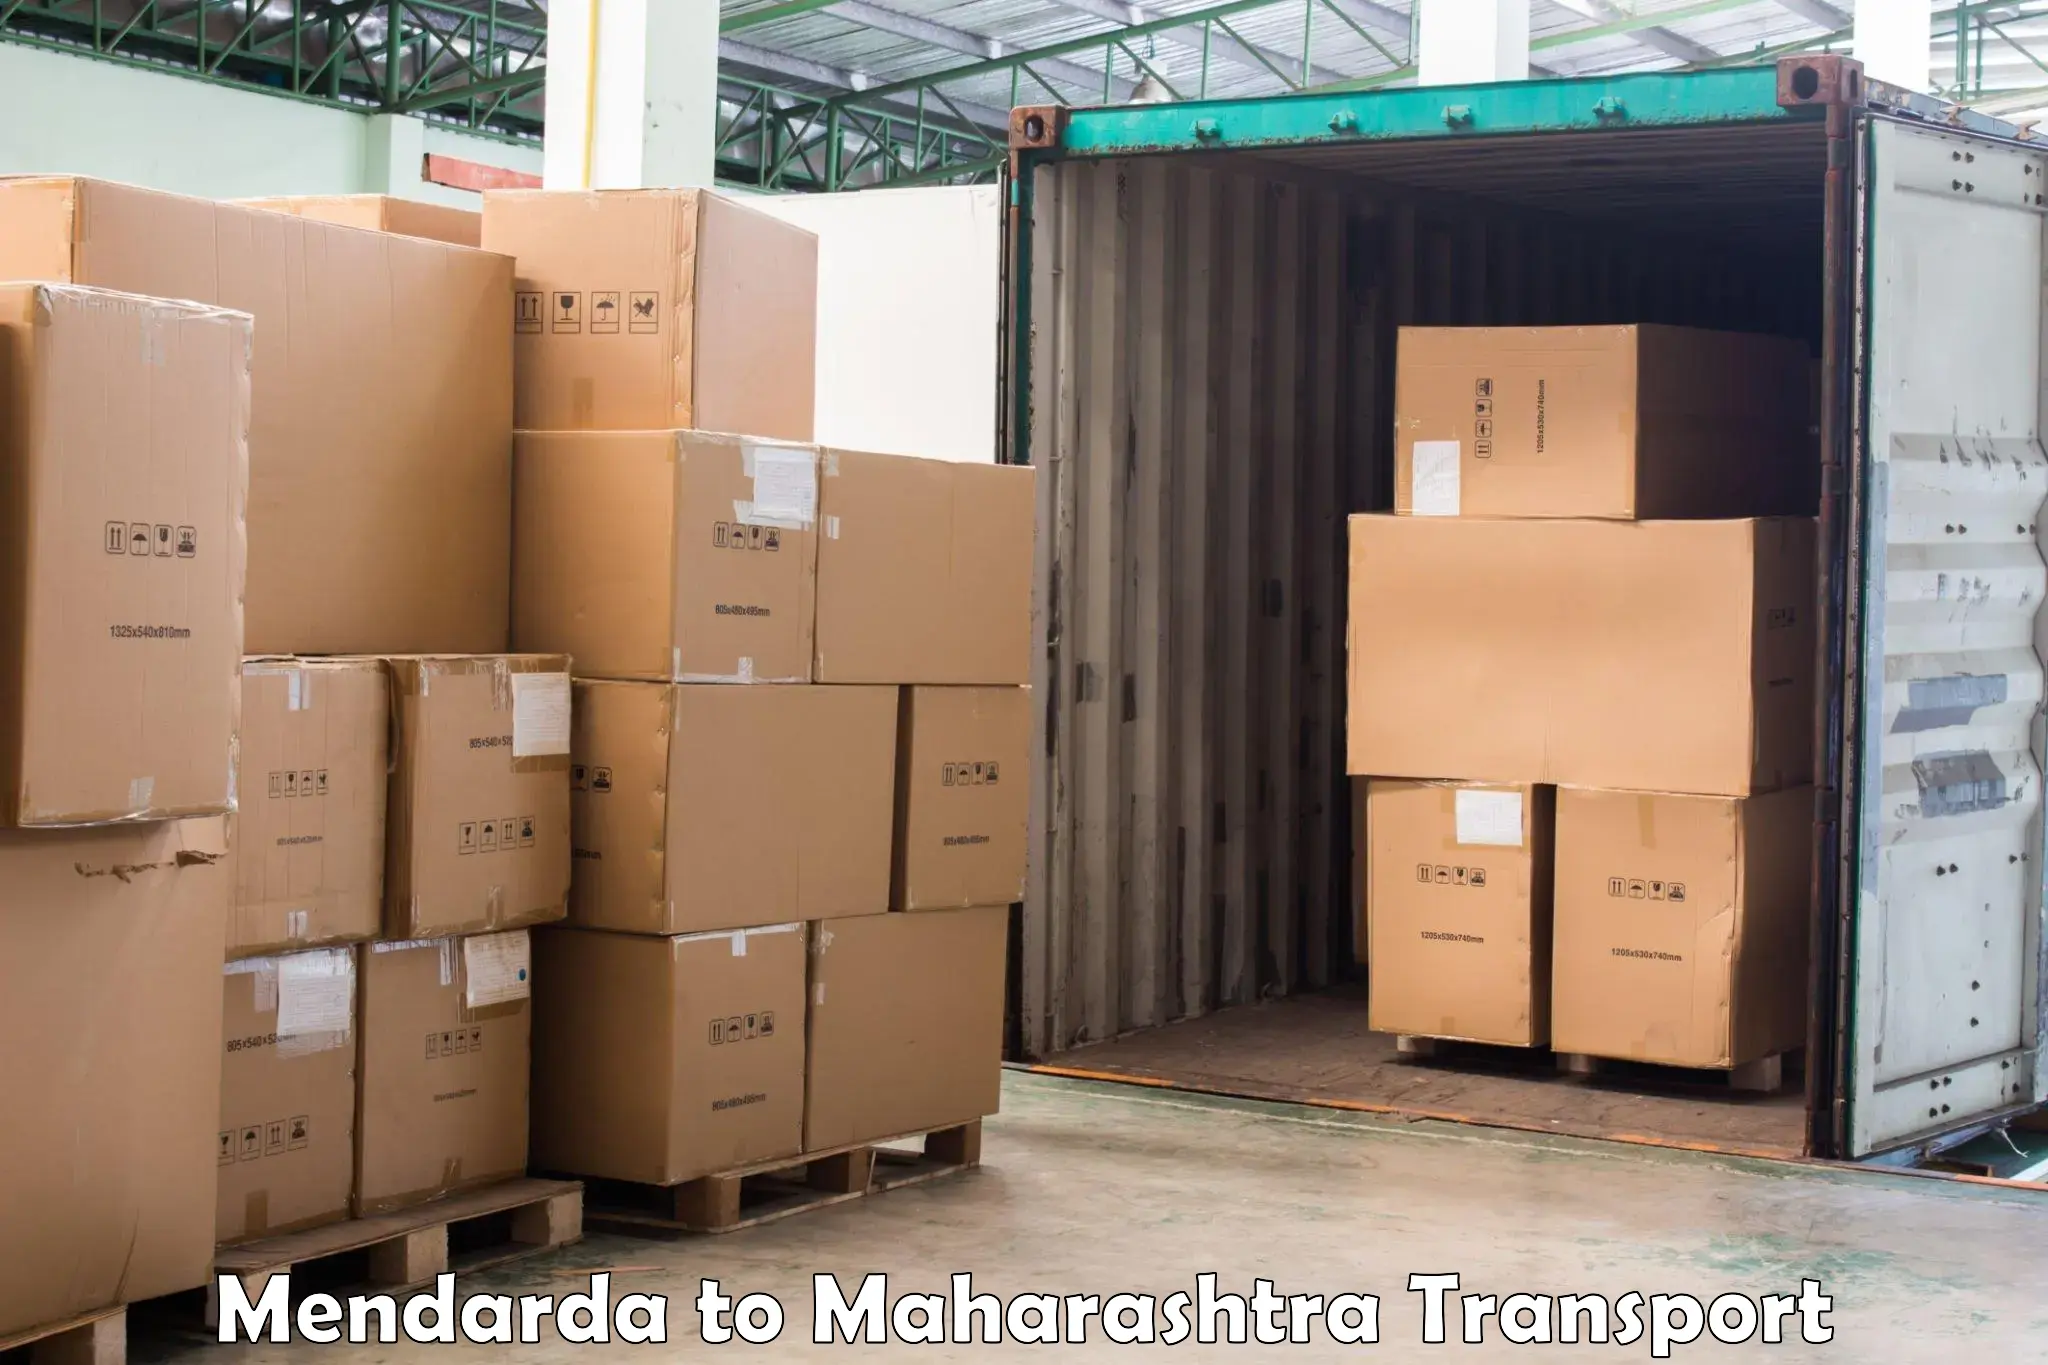 Furniture transport service Mendarda to Vasmat